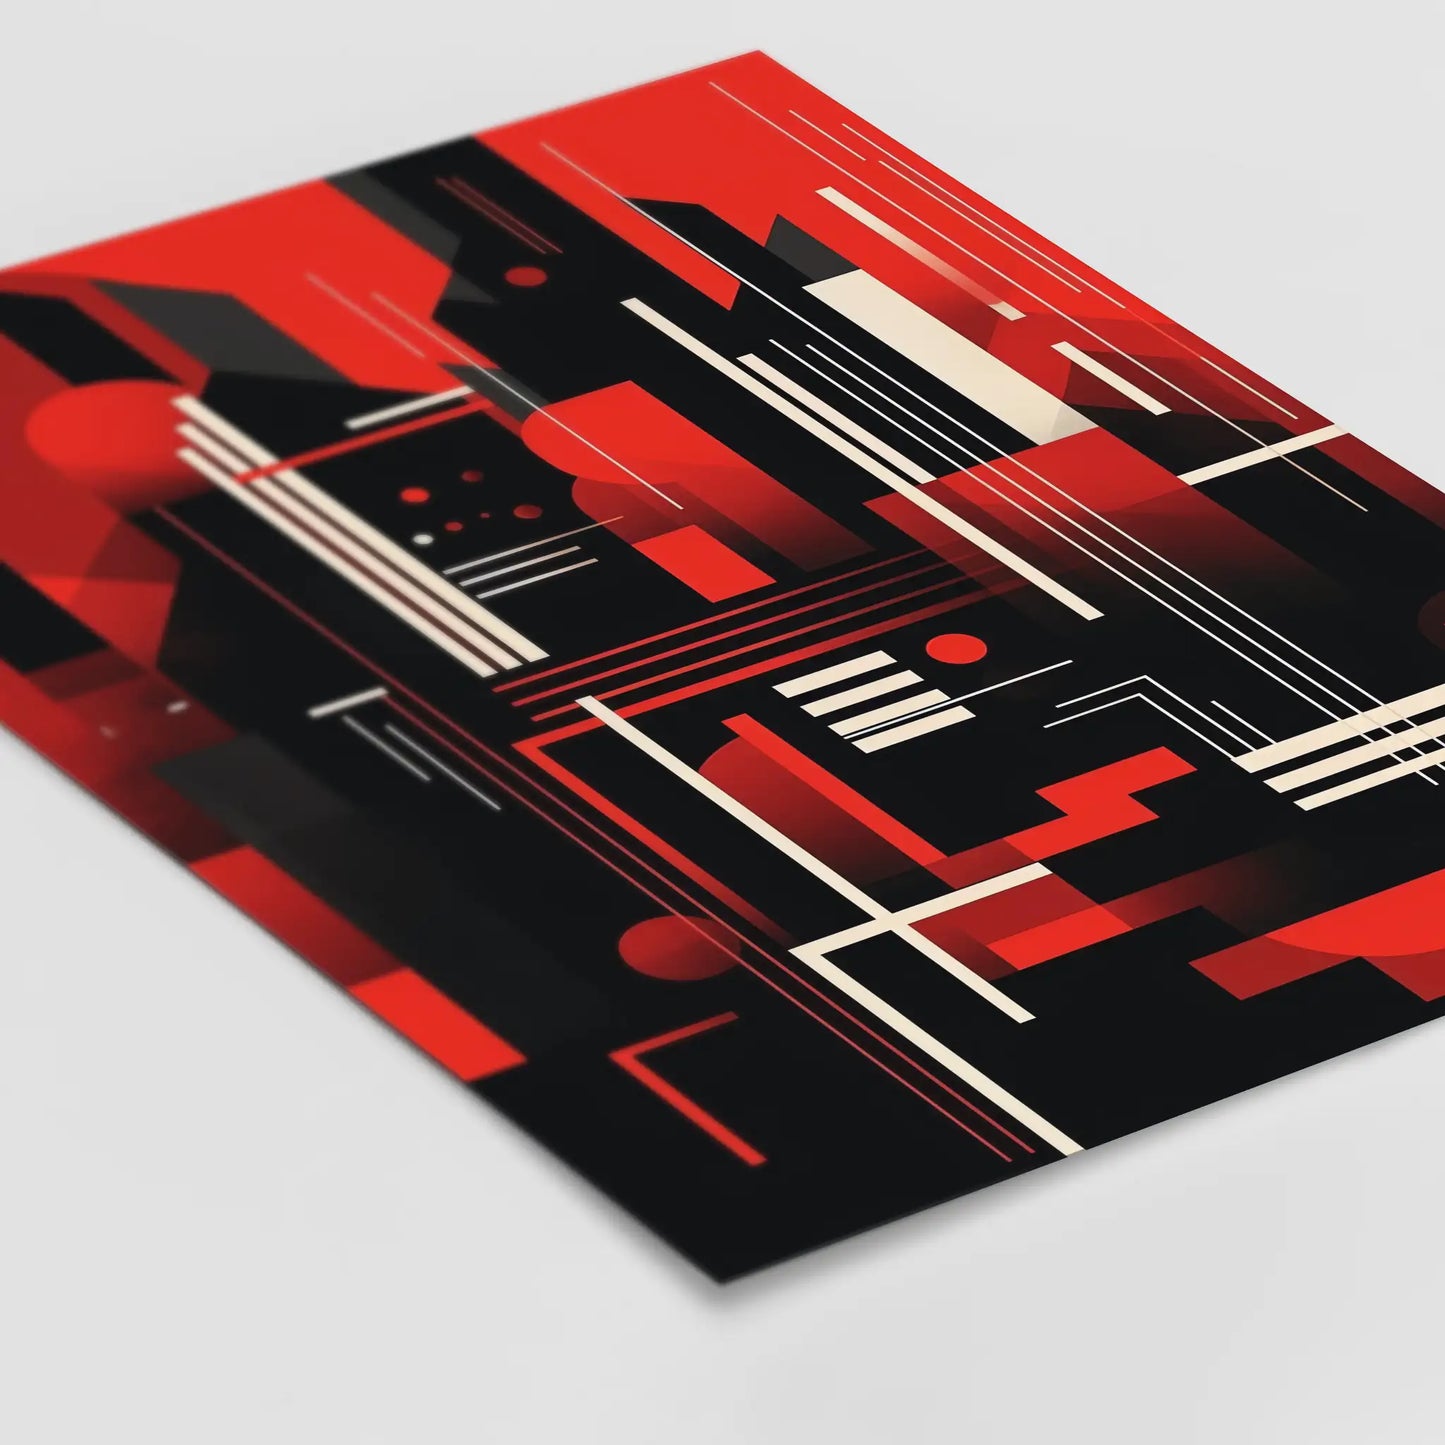 Bauhaus Red No 3 - Poster